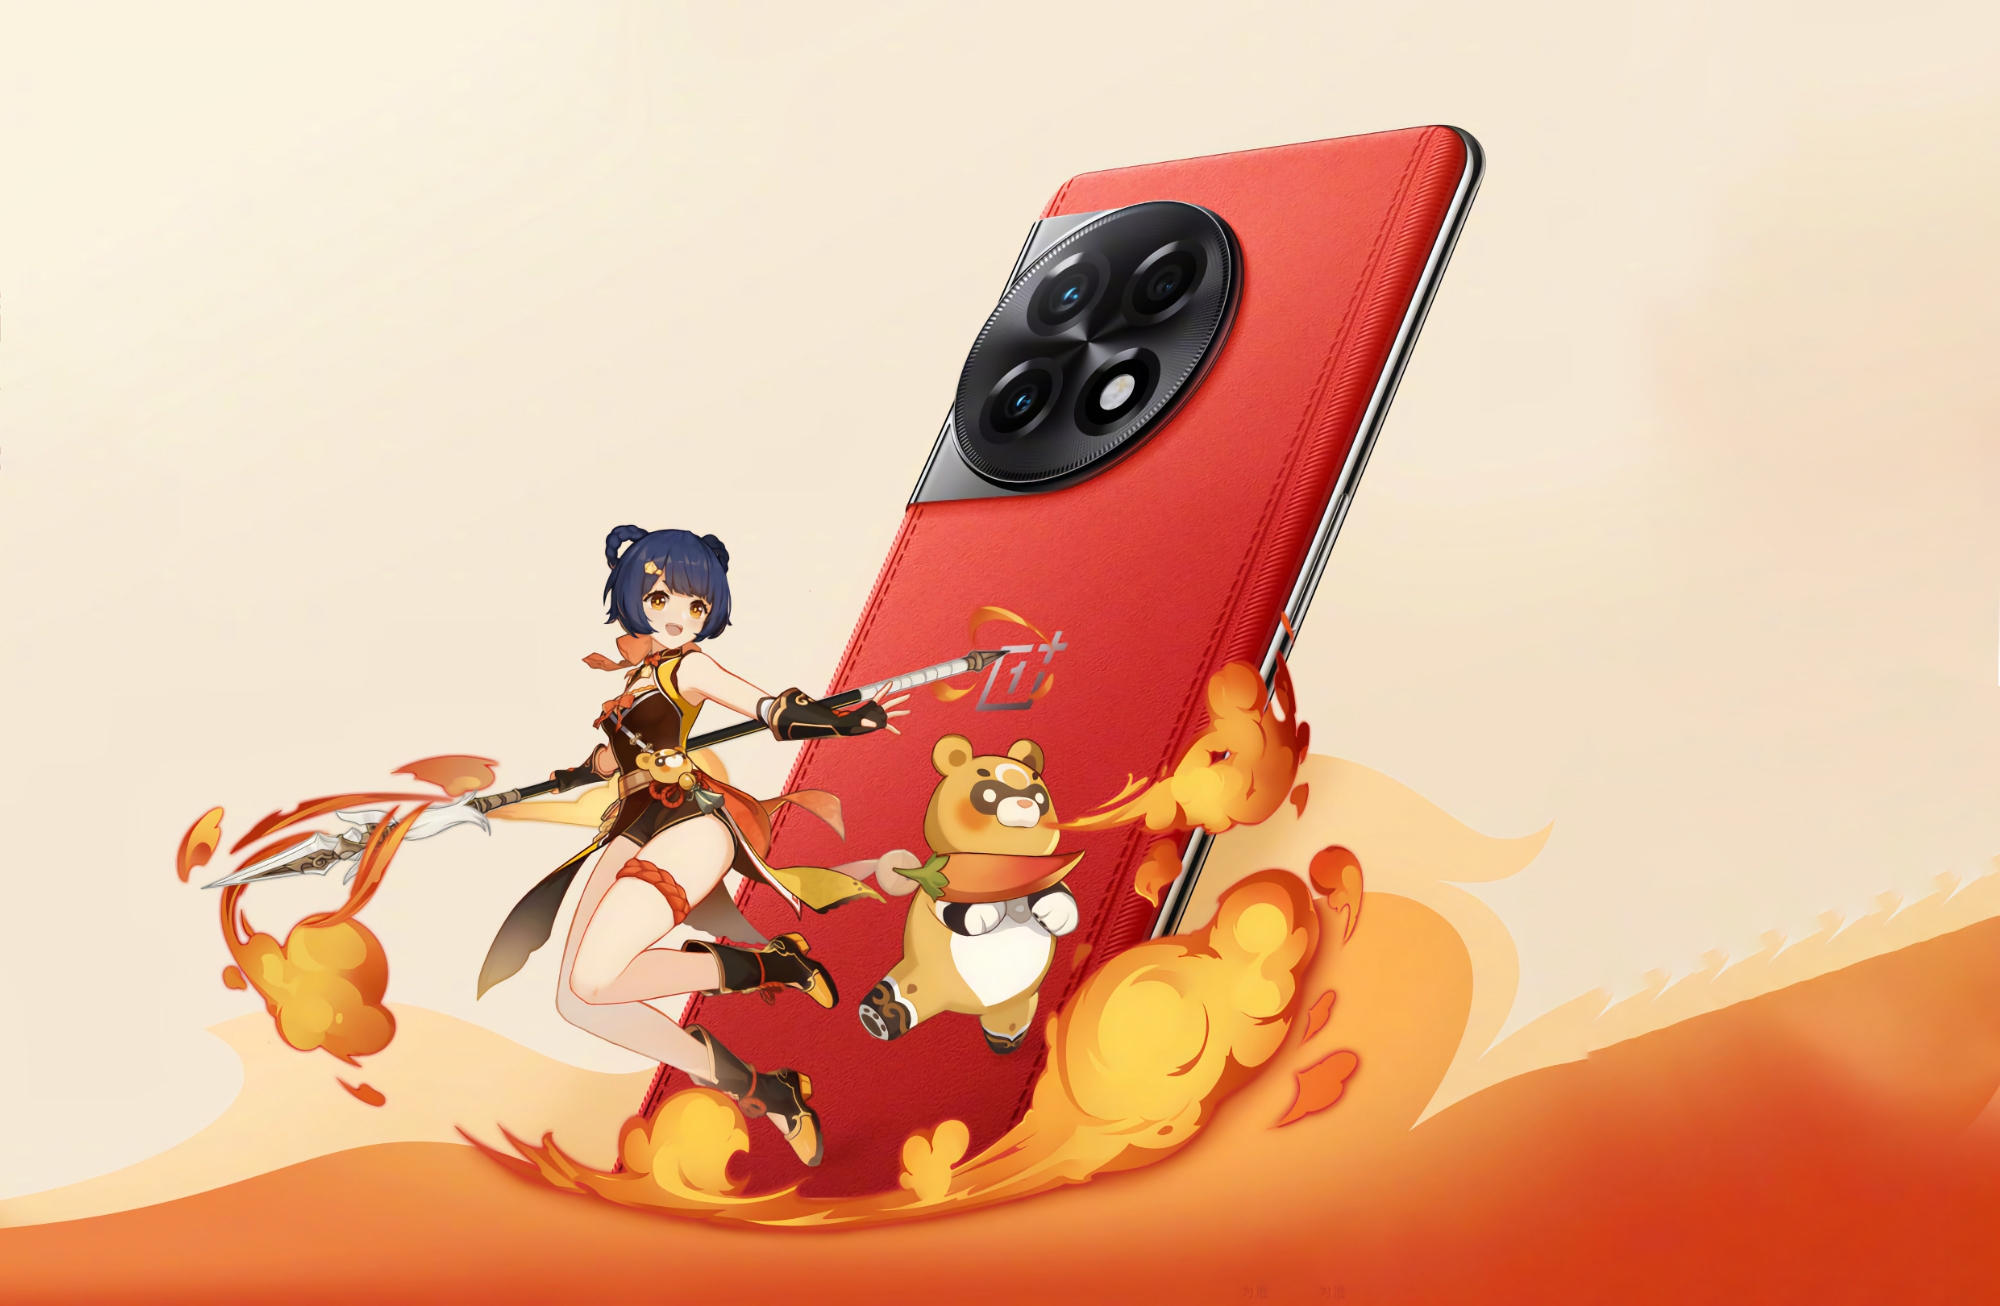 Le OnePlus Ace 2, édition spéciale pour les fans de Genshin Impact, dévoilé